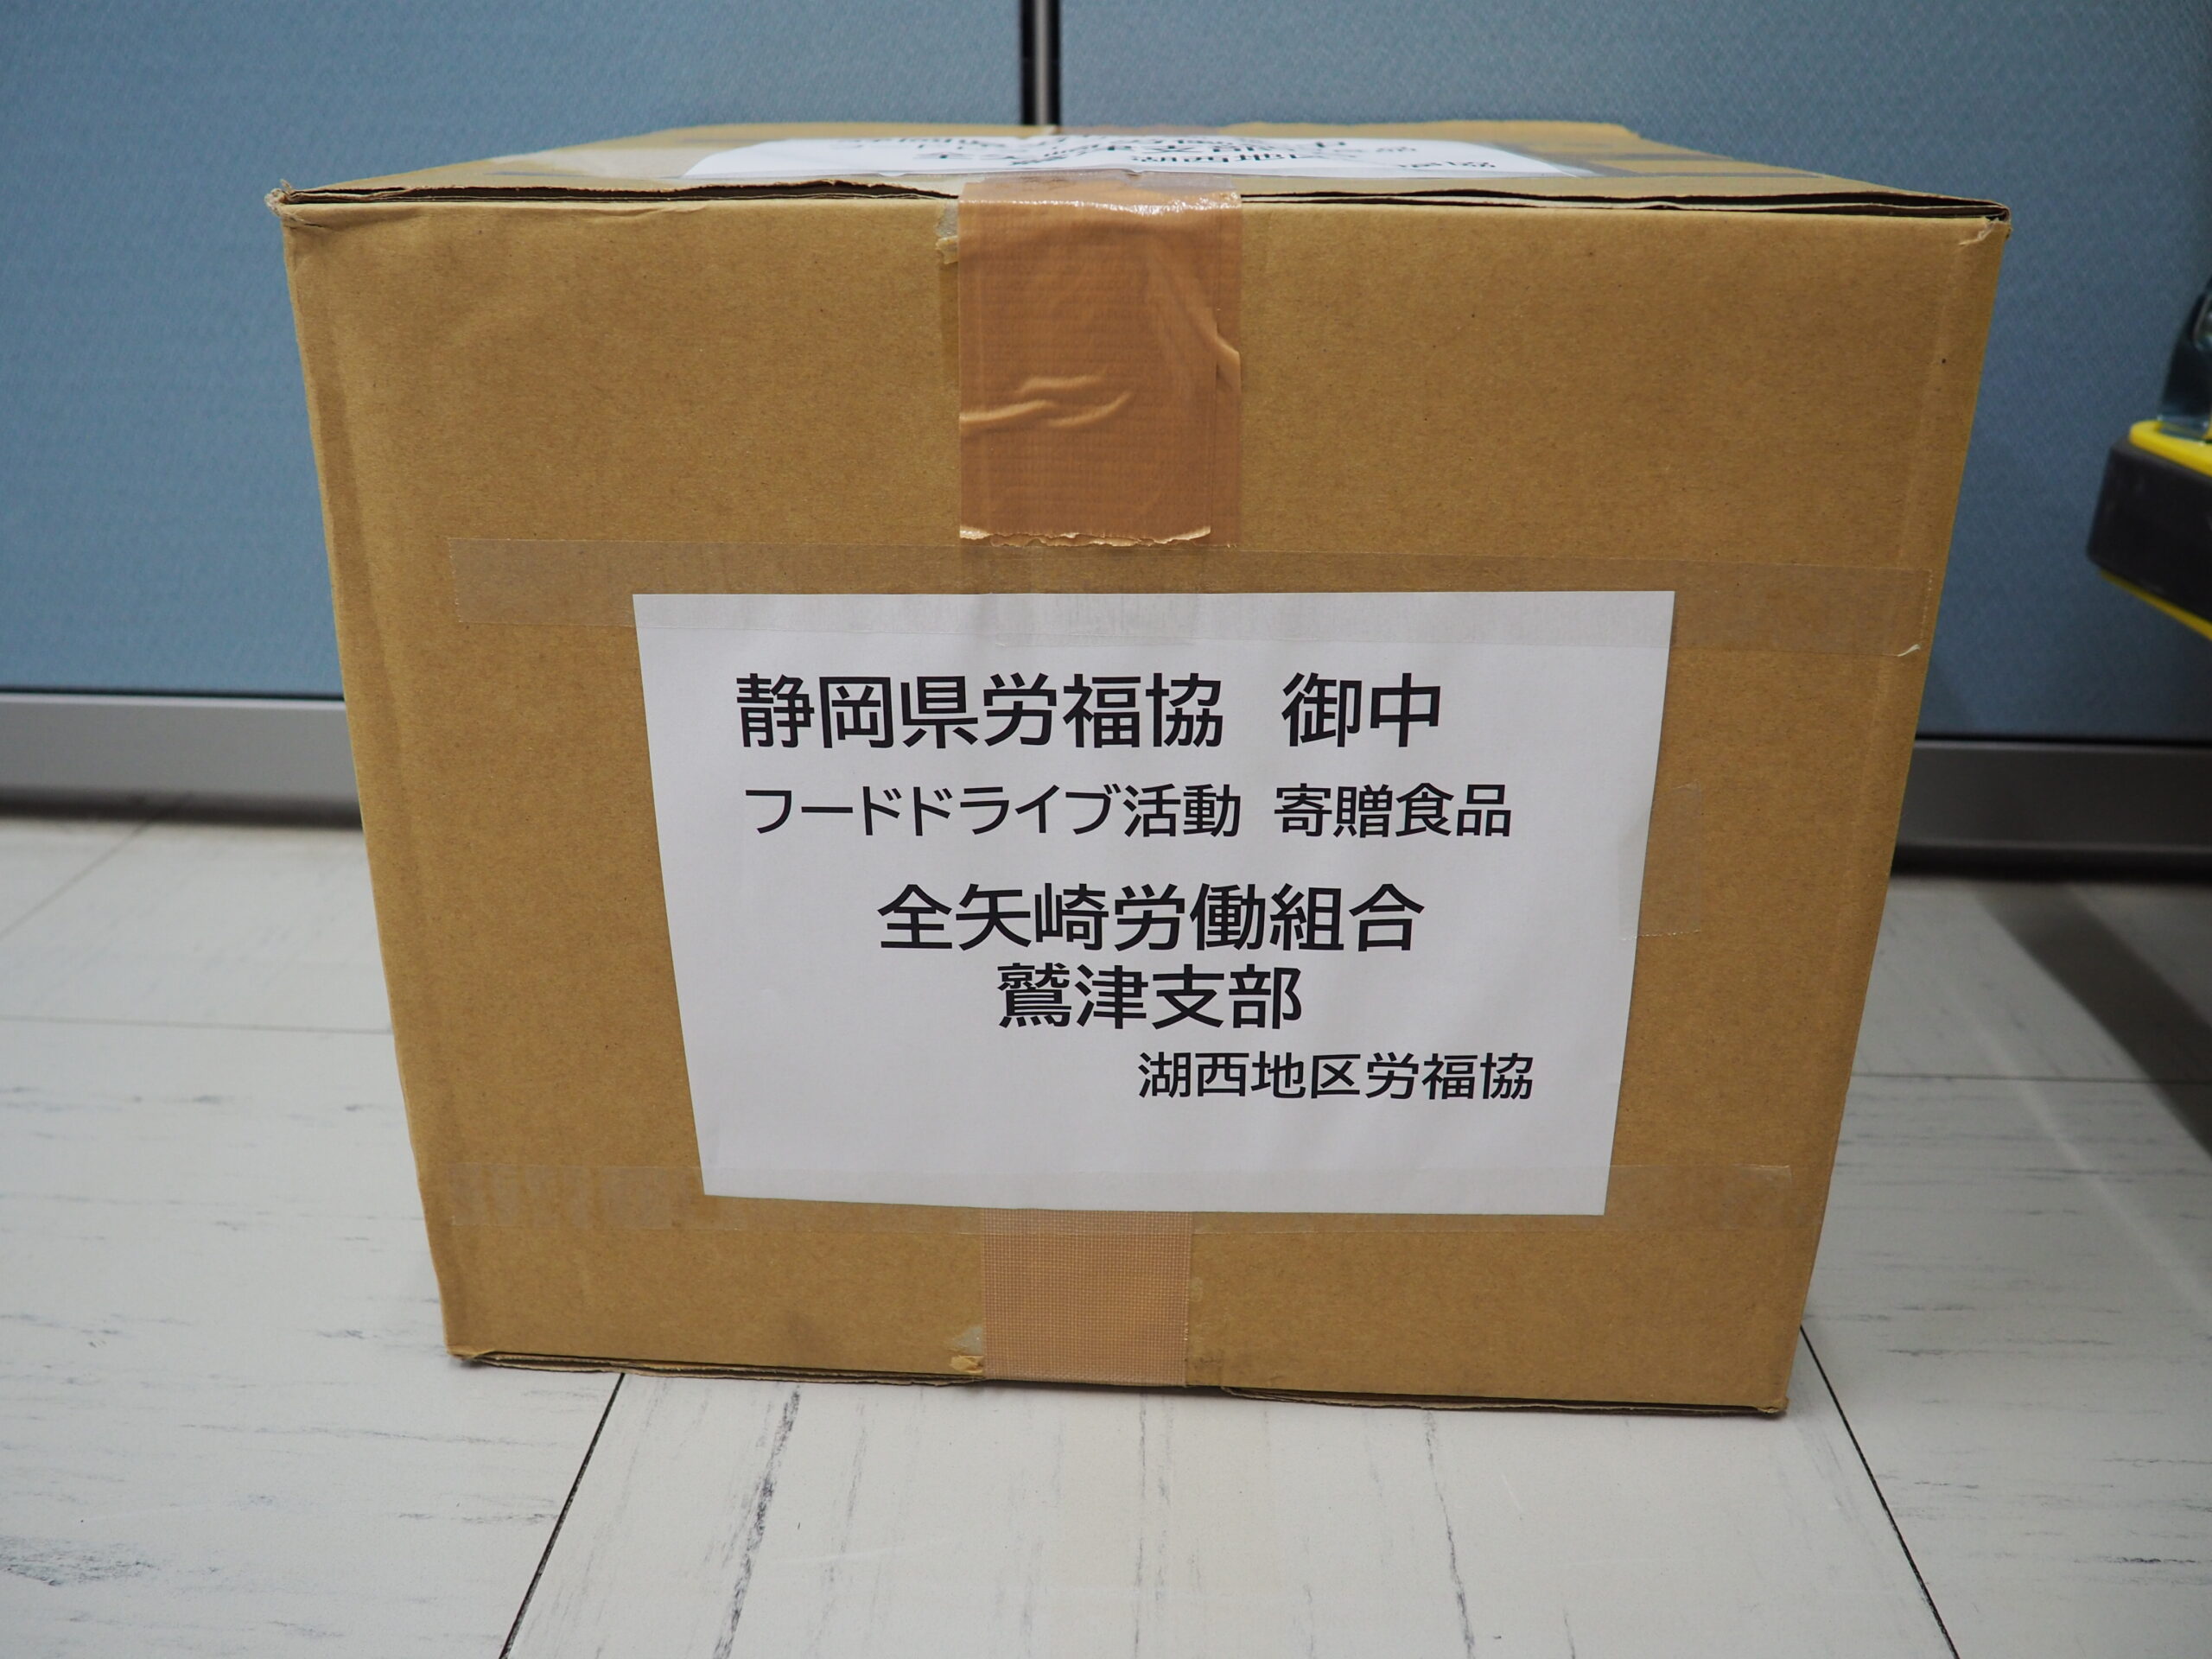 全矢崎労働組合鷲津支部様から食品を提供いただきました。